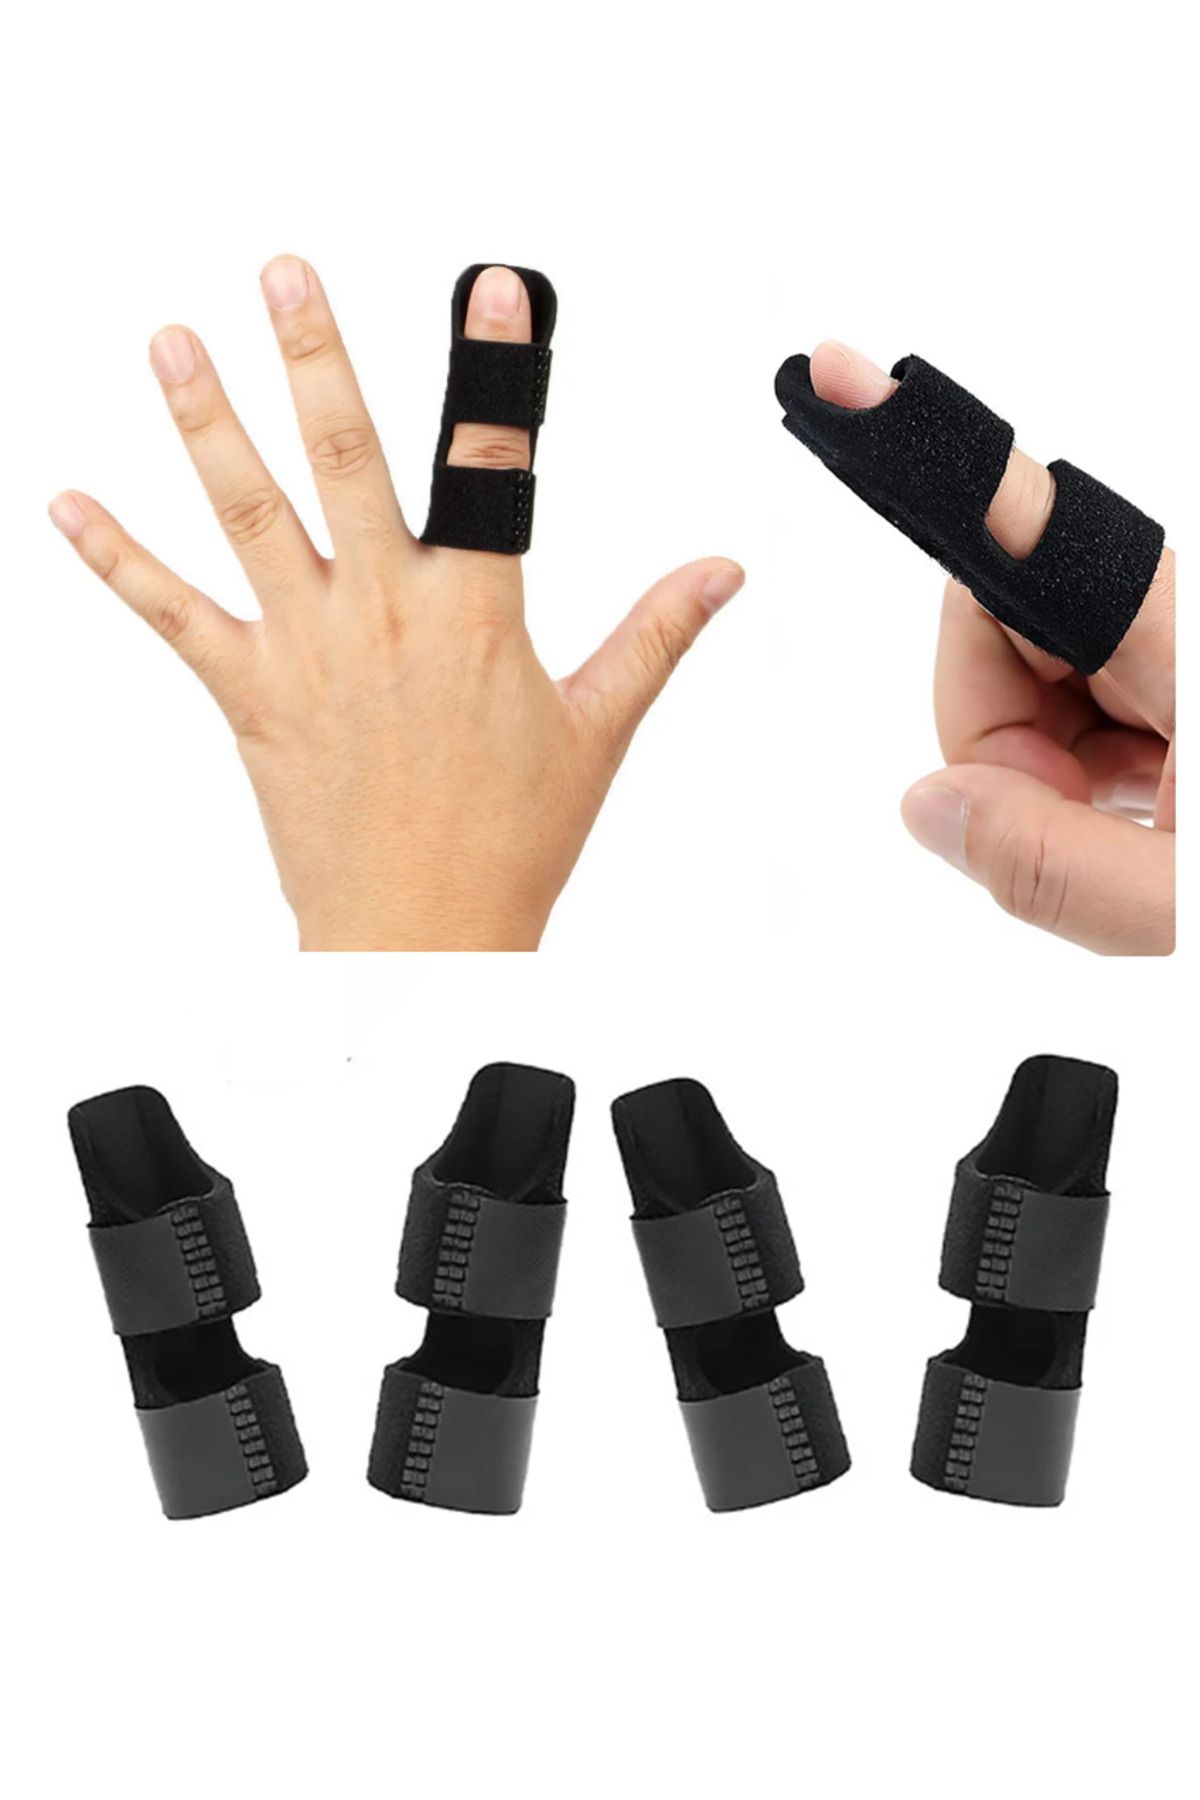 ARWEX Parmak Ateli Parmak Sabitleme Ateli Kırık Parmak Ateli Finger Splint